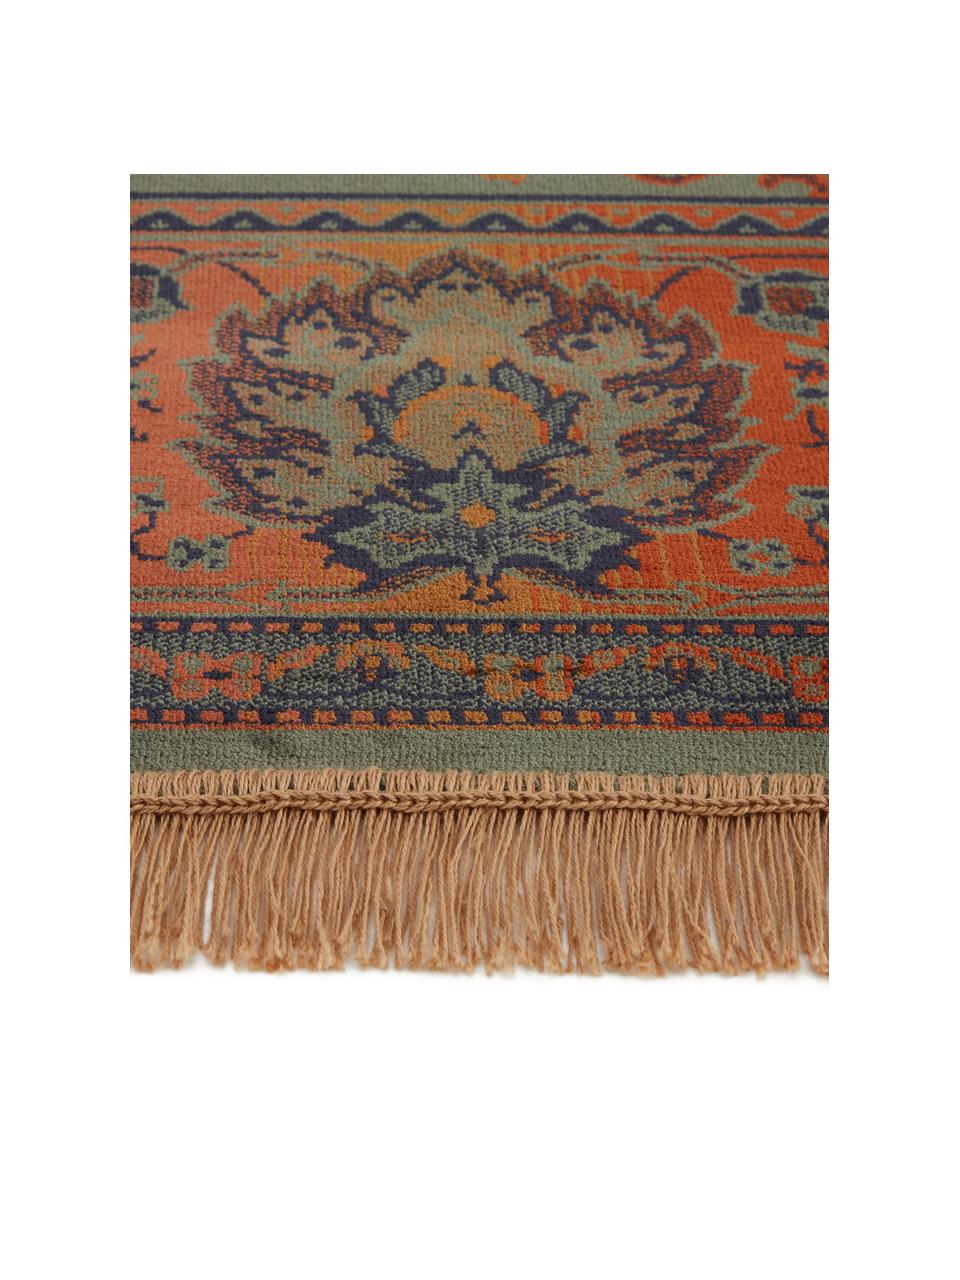 Teppich Bid mit Blumenmuster im Orient Style, Flor: 38% Rayon, 26% Baumwolle,, Grüntöne, Rottöne, Blau, Beige, B 200 x L 300 cm (Größe L)